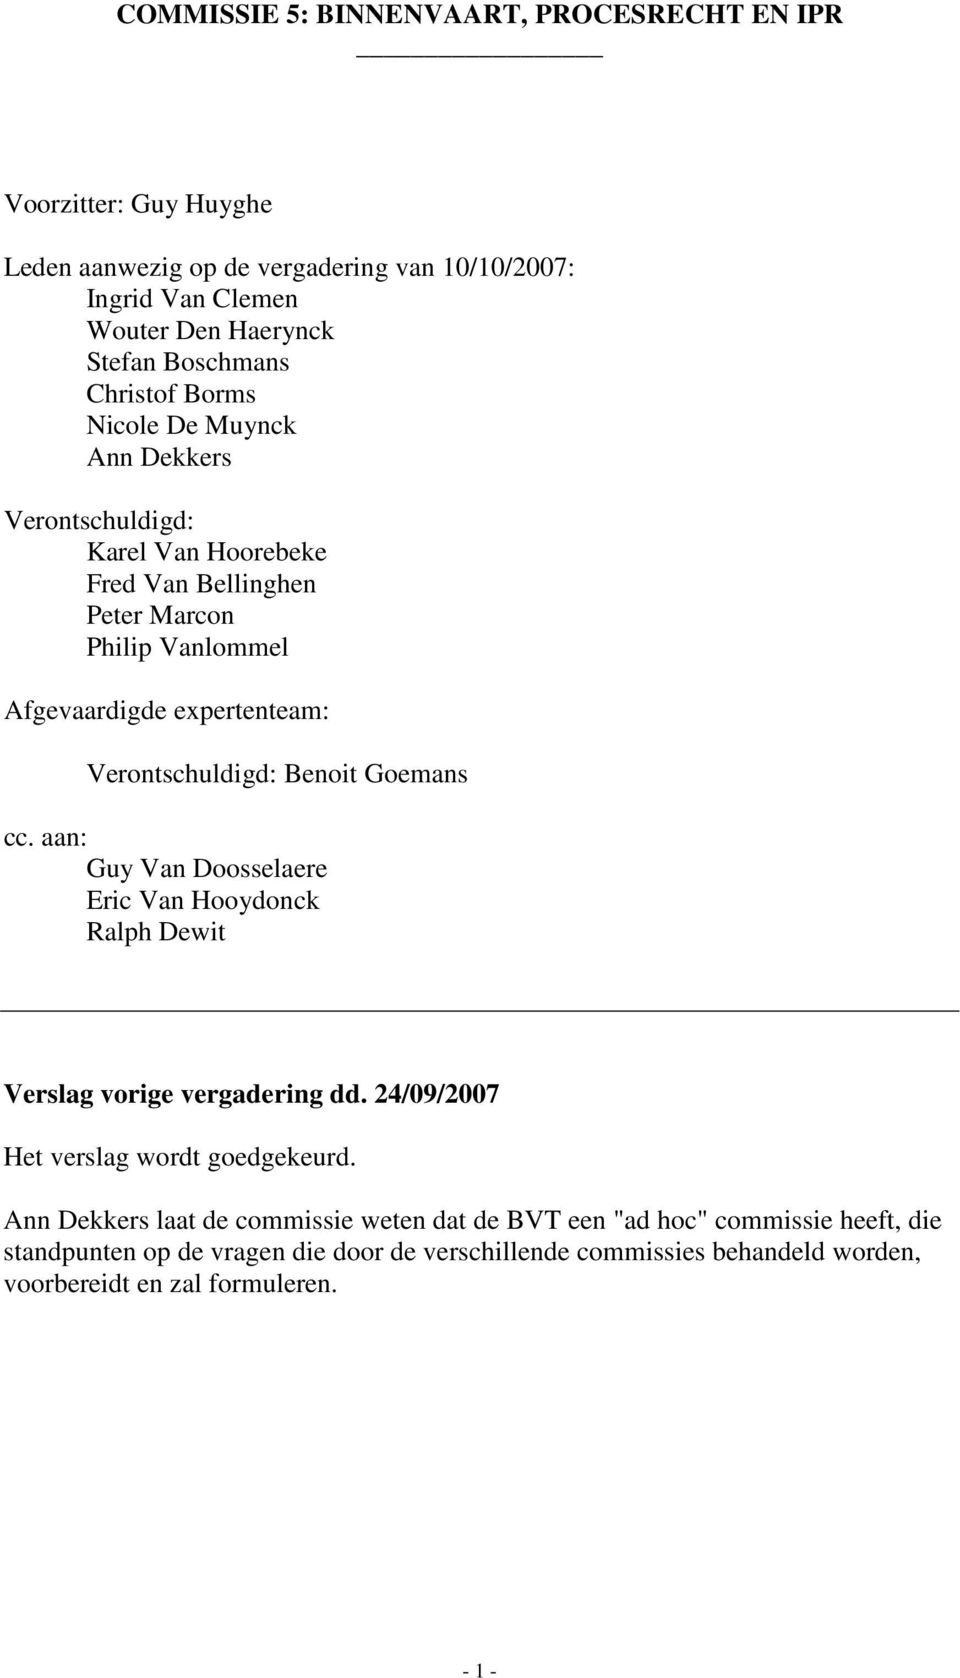 Verontschuldigd: Benoit Goemans cc. aan: Guy Van Doosselaere Eric Van Hooydonck Ralph Dewit Verslag vorige vergadering dd. 24/09/2007 Het verslag wordt goedgekeurd.